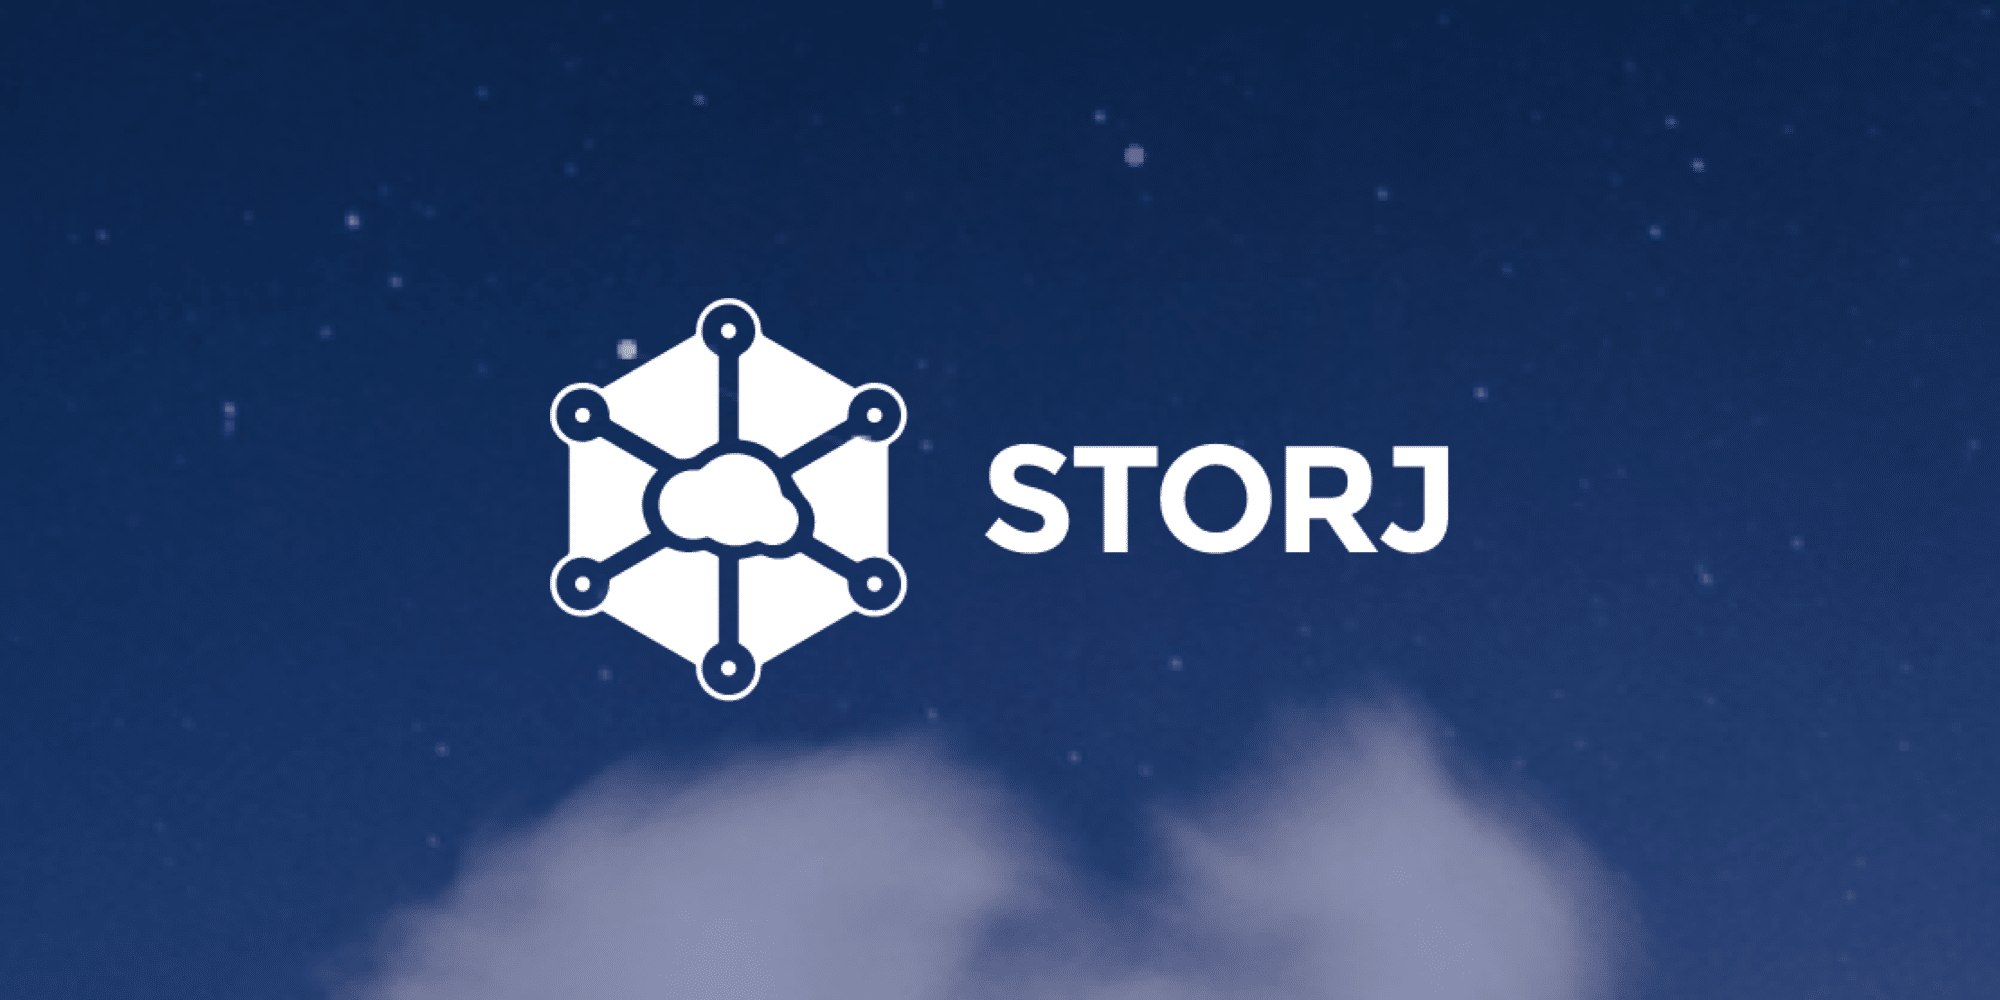 Storj là một nền tảng lưu trữ tập trung có tính bảo mật và linh hoạt cao